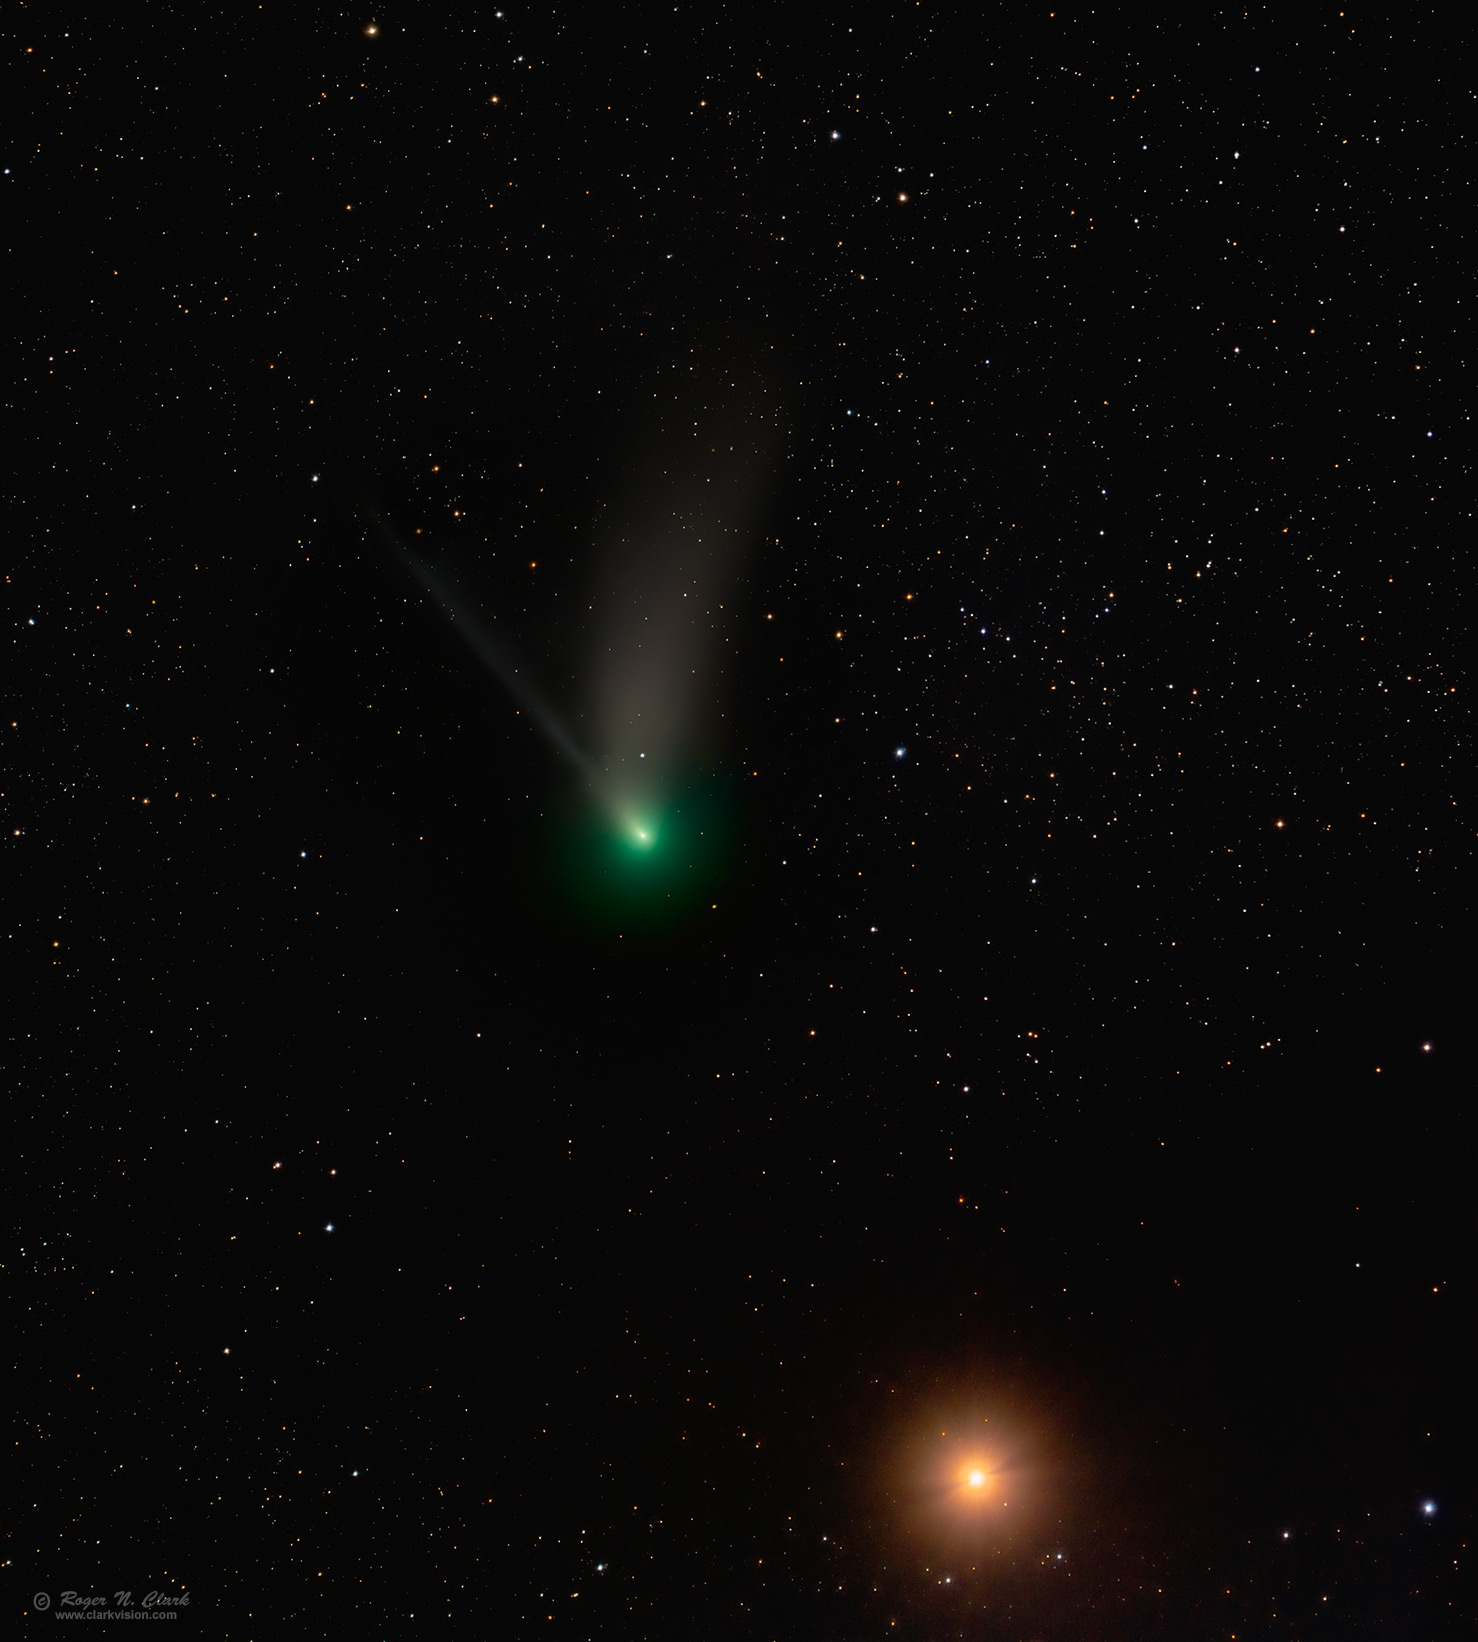 image comet-c2022ztf+mars-2023-02-10-btl8-rnclark-strs19m+comet53m.d-c1.33xs.jpg is Copyrighted by Roger N. Clark, www.clarkvision.com